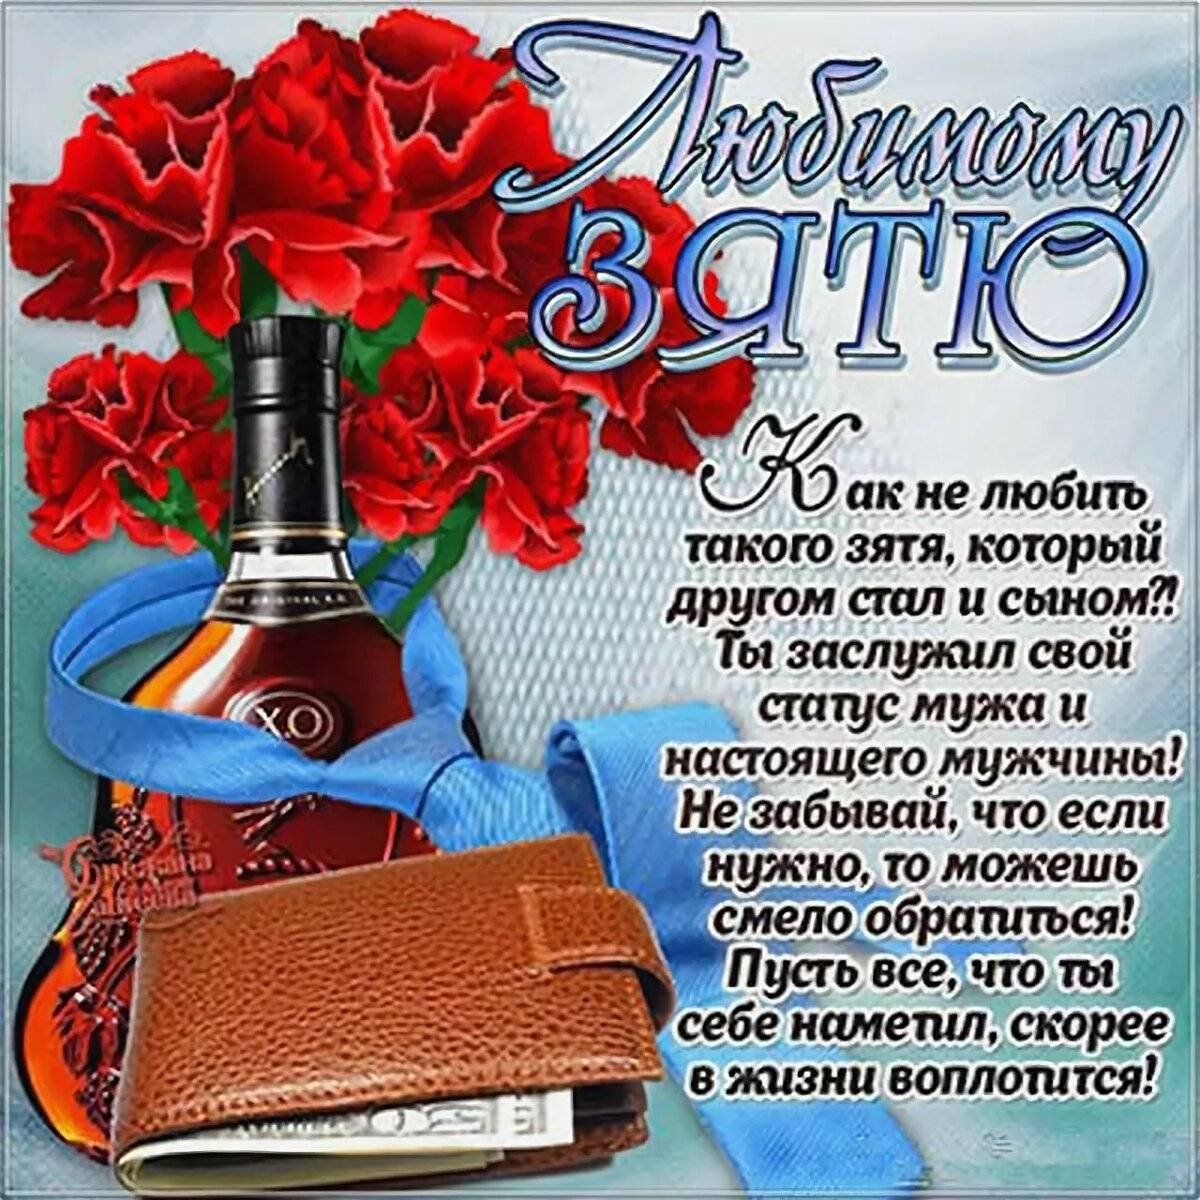 Как в одноклассниках написать статус всем спасибо за поздравления - фото и картинки sauna-ernesto.ru